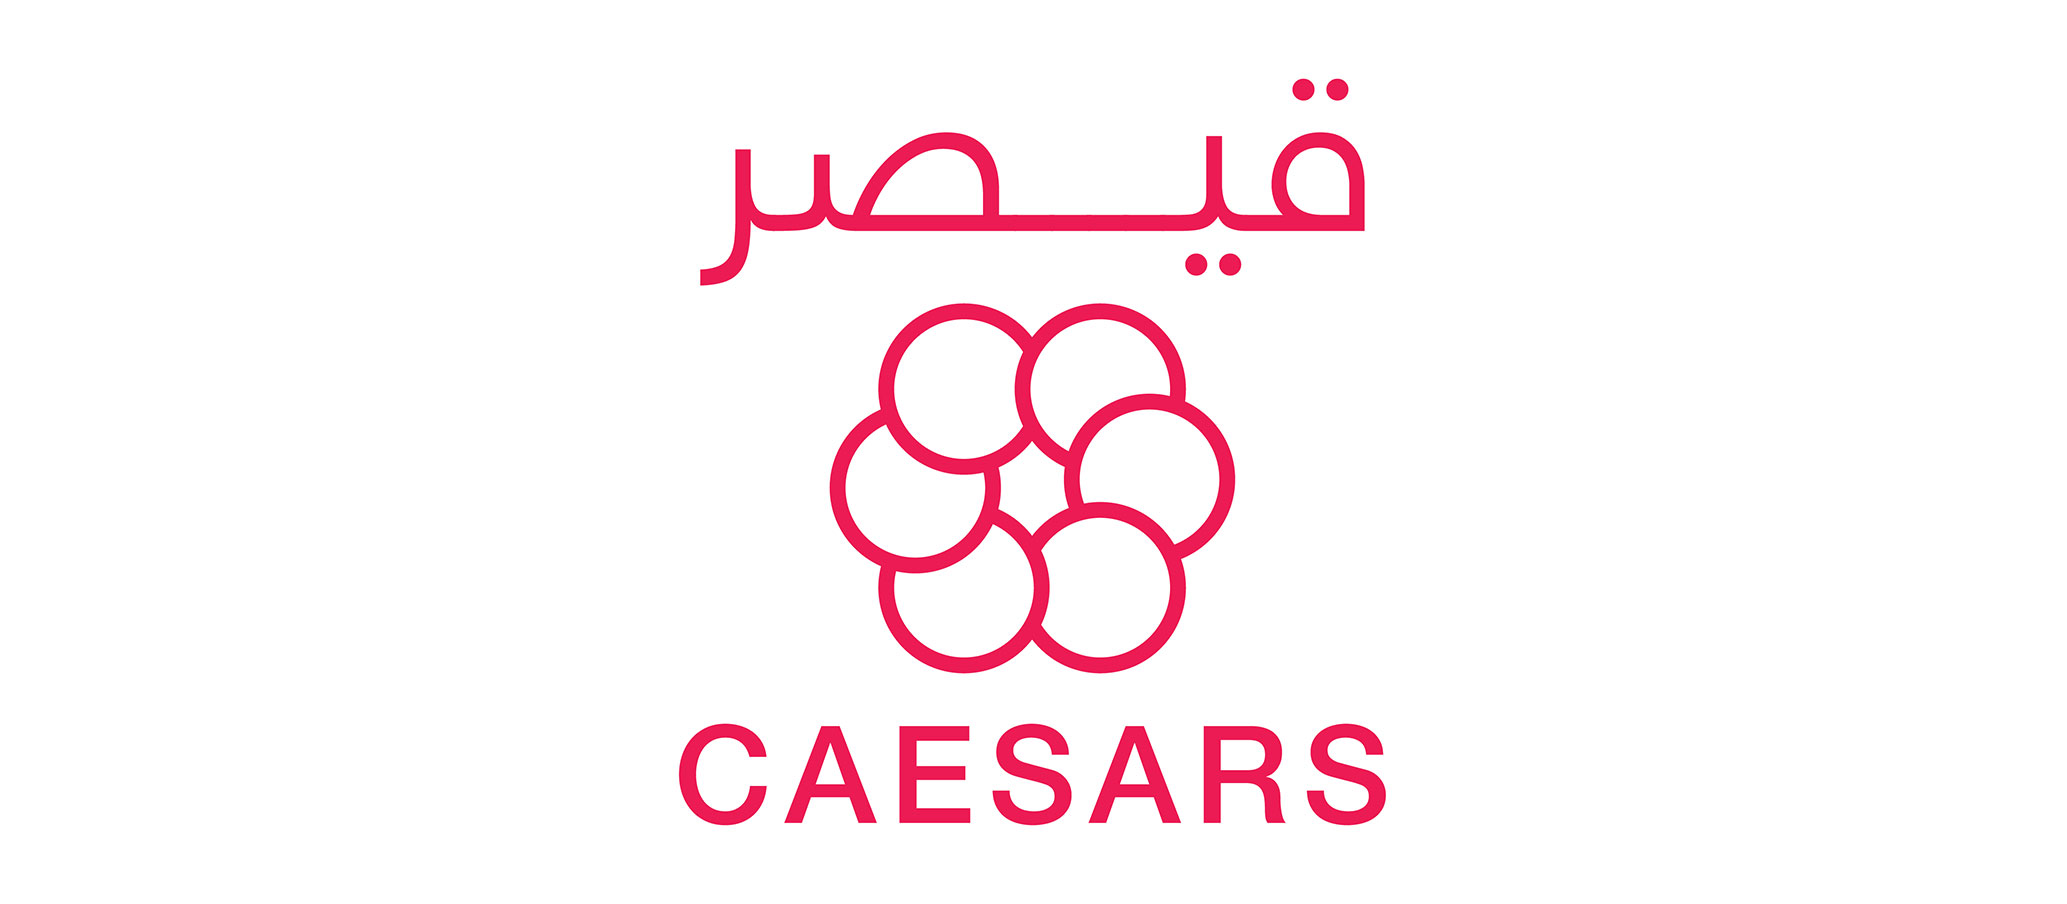 Caesars-011